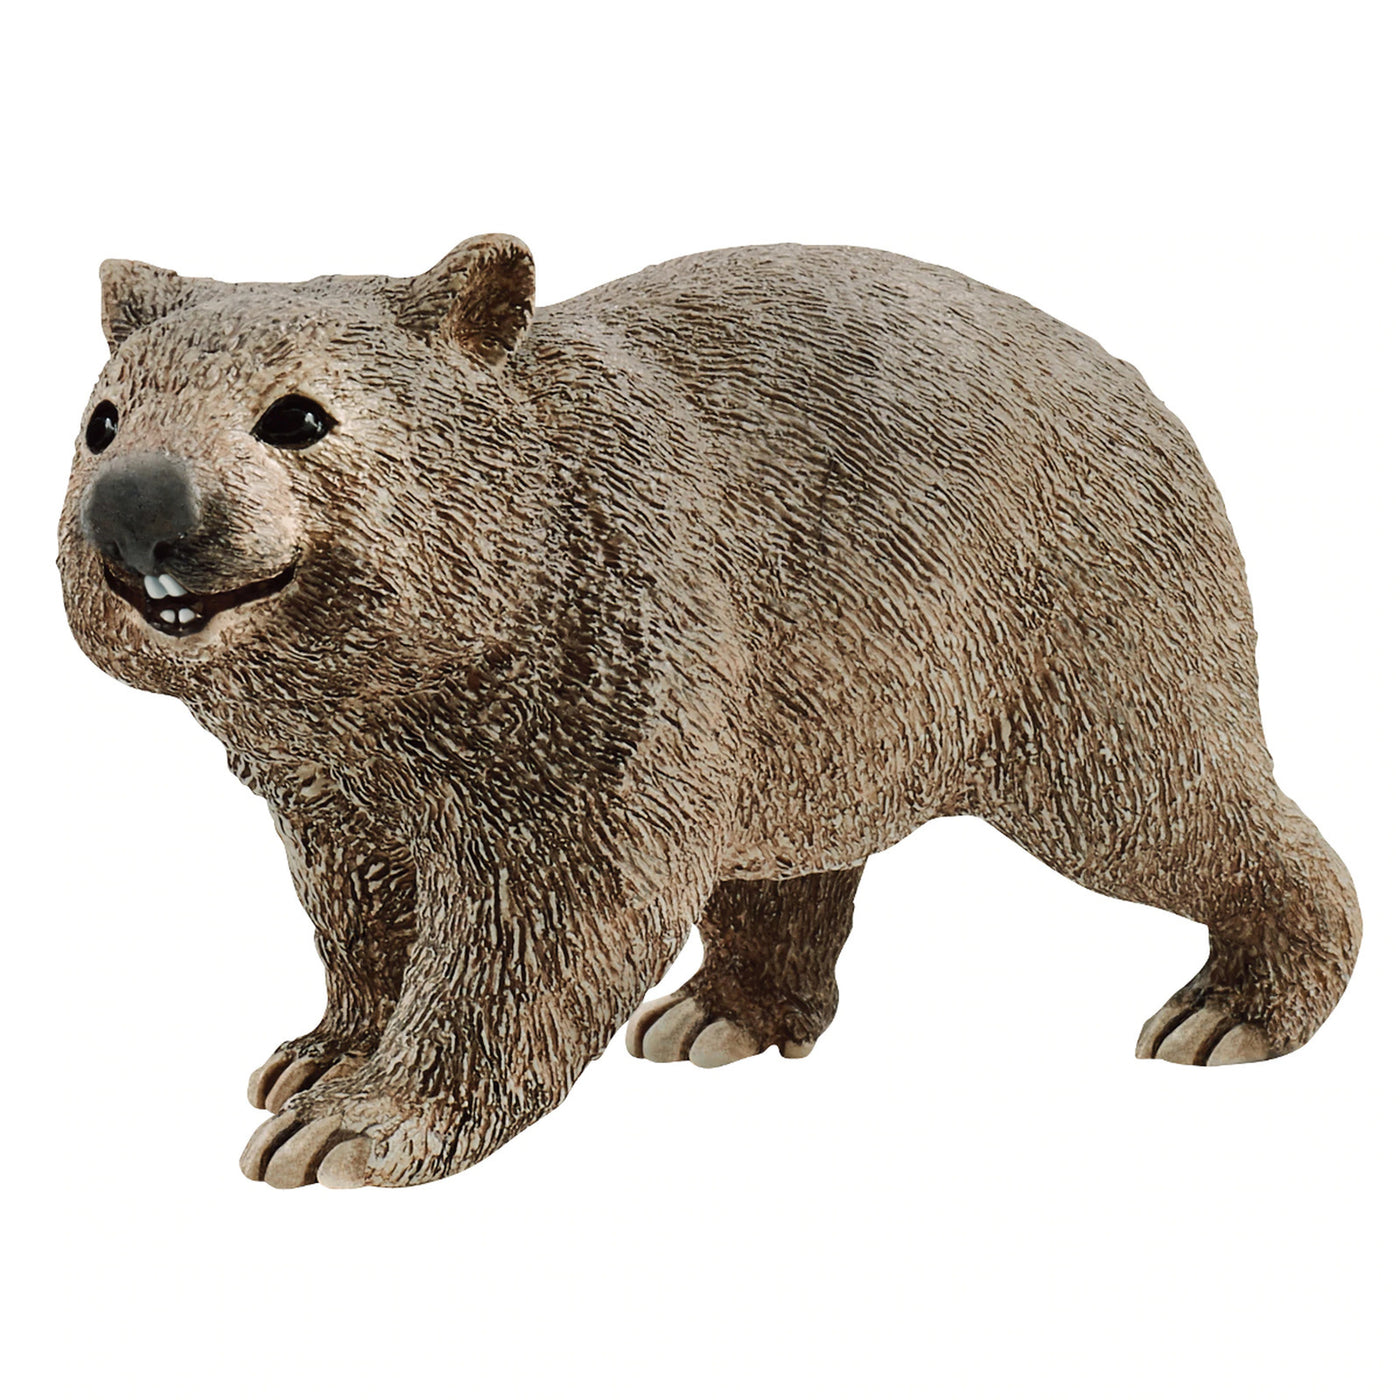 Schleich 14834 Wombat figurine